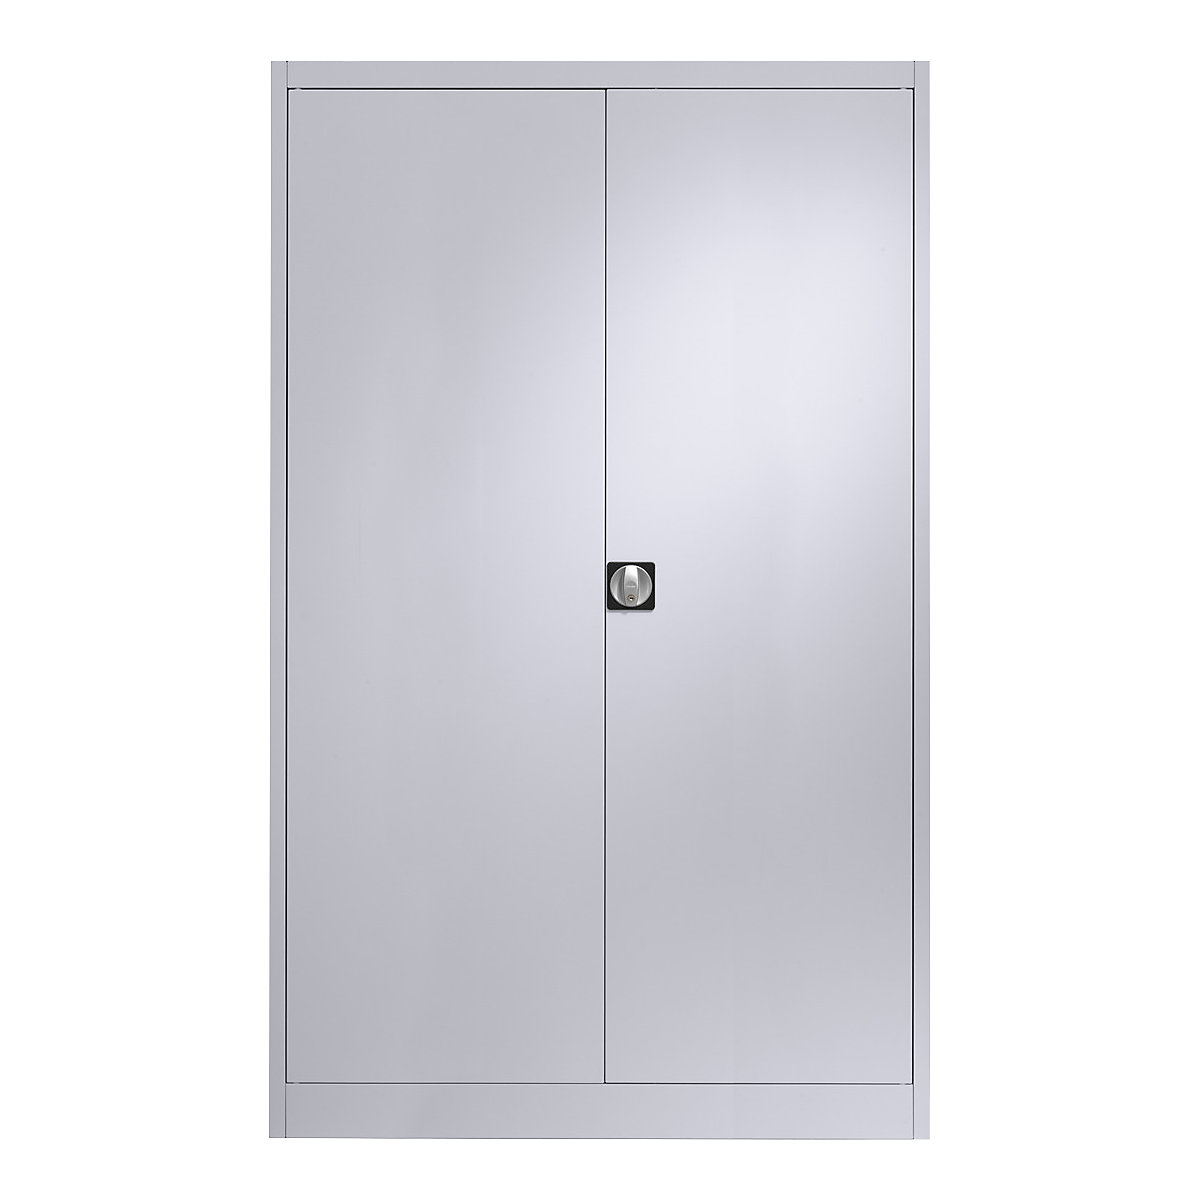 Čelični ormar s krilnim vratima – mauser, 4 police, širina 1200 mm, u bijeloj aluminij boji, vanjska dubina 420 mm-6